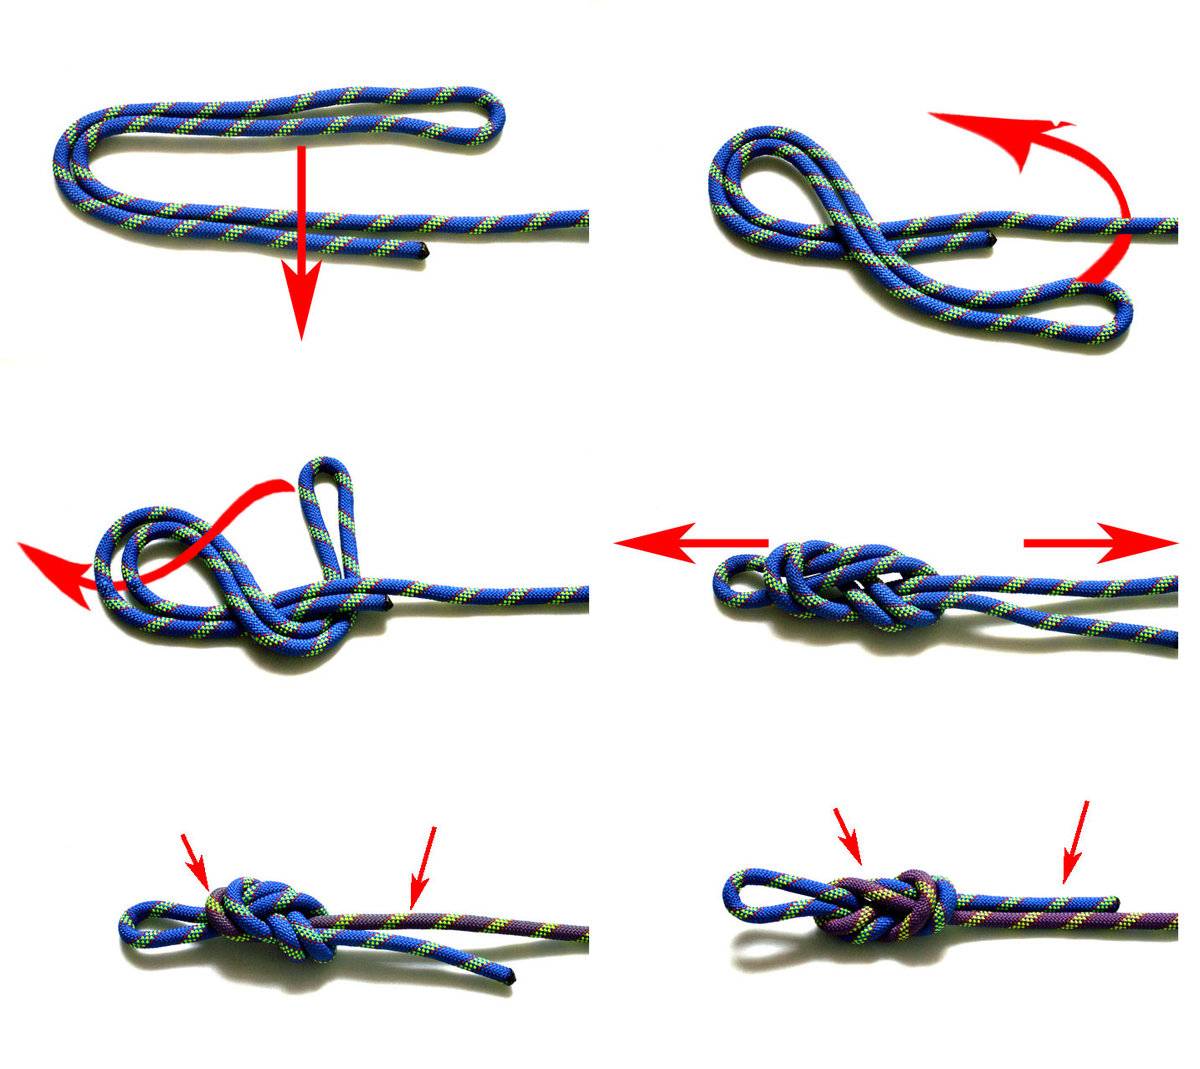 Морские узлы - схемы вязки?. как правильно вязать морские узлы?